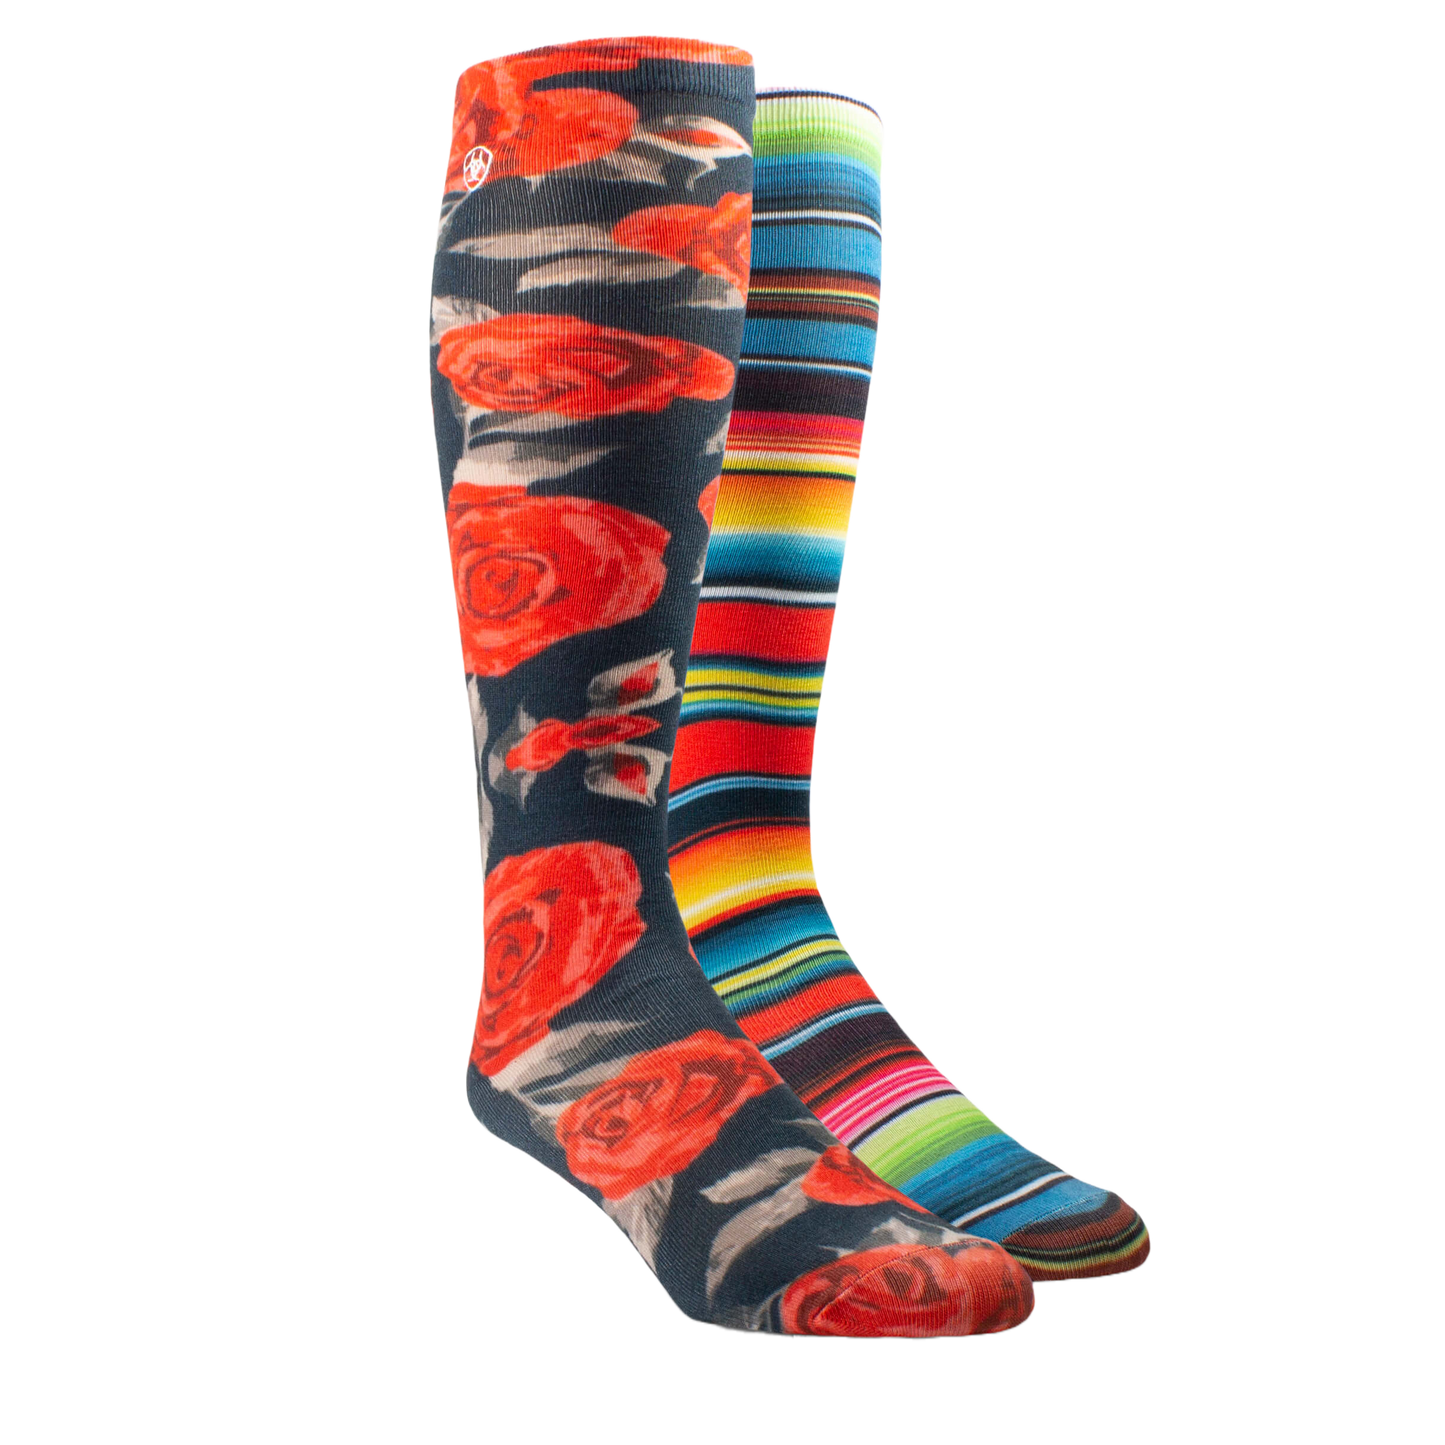 Ariat Ladies Western Beauty Knee High 2 Pair Multicolor Socks AR2941-981